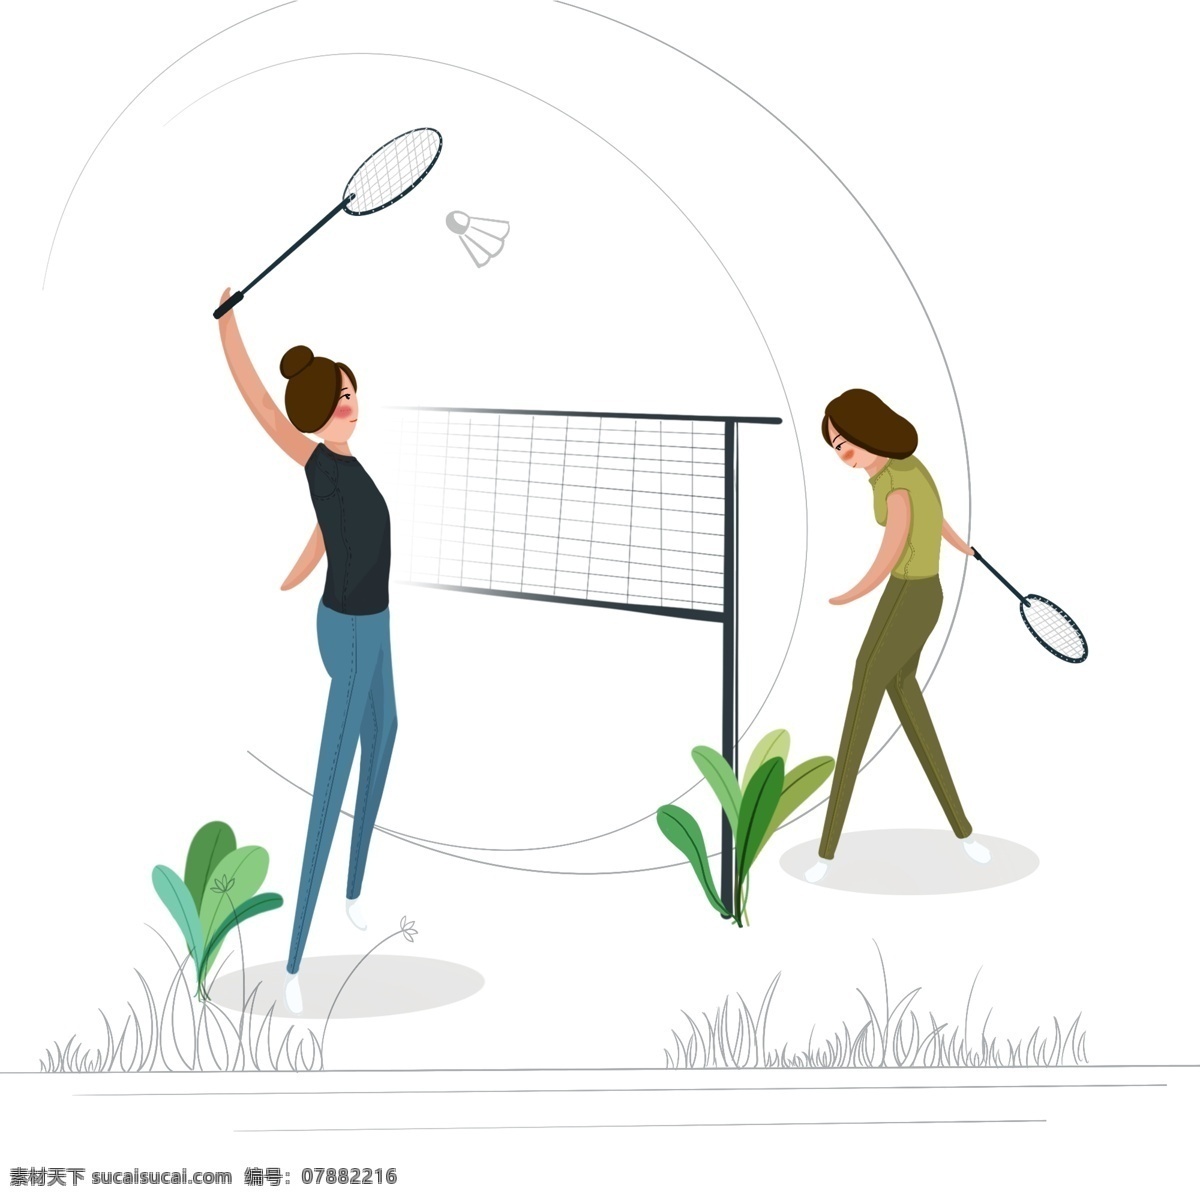 青年节 两 女子 一起 运动 羽毛球 健身 元素 两人 打球 女孩 简约 虚实象生